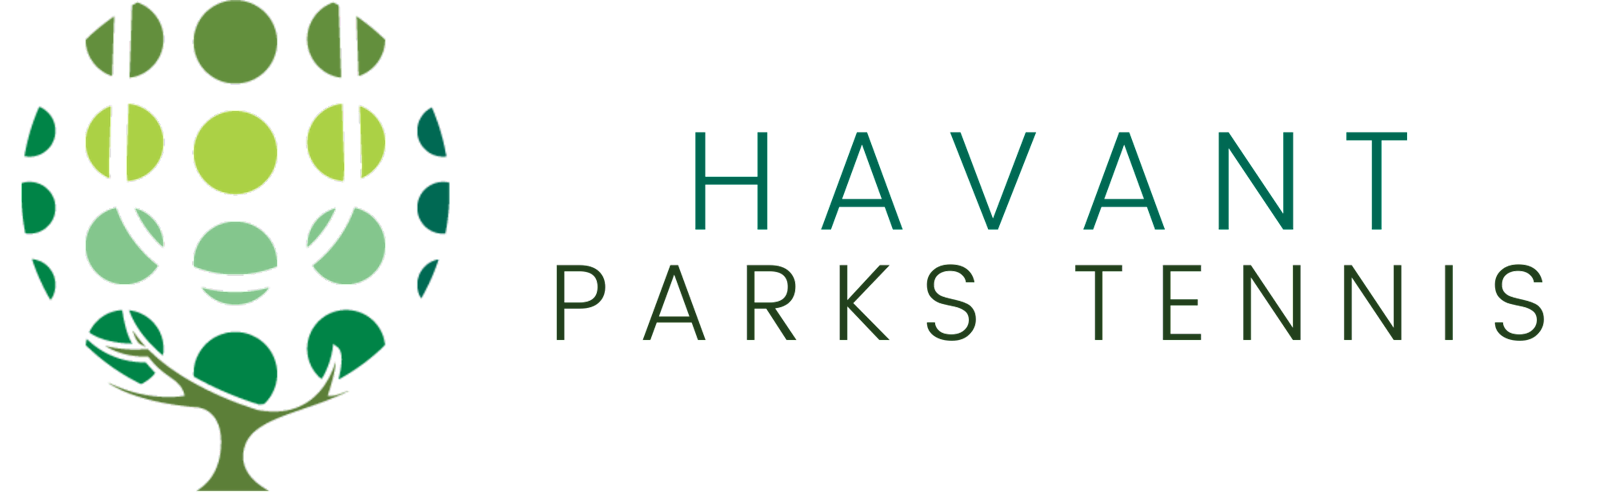 Havant Parks Tennis